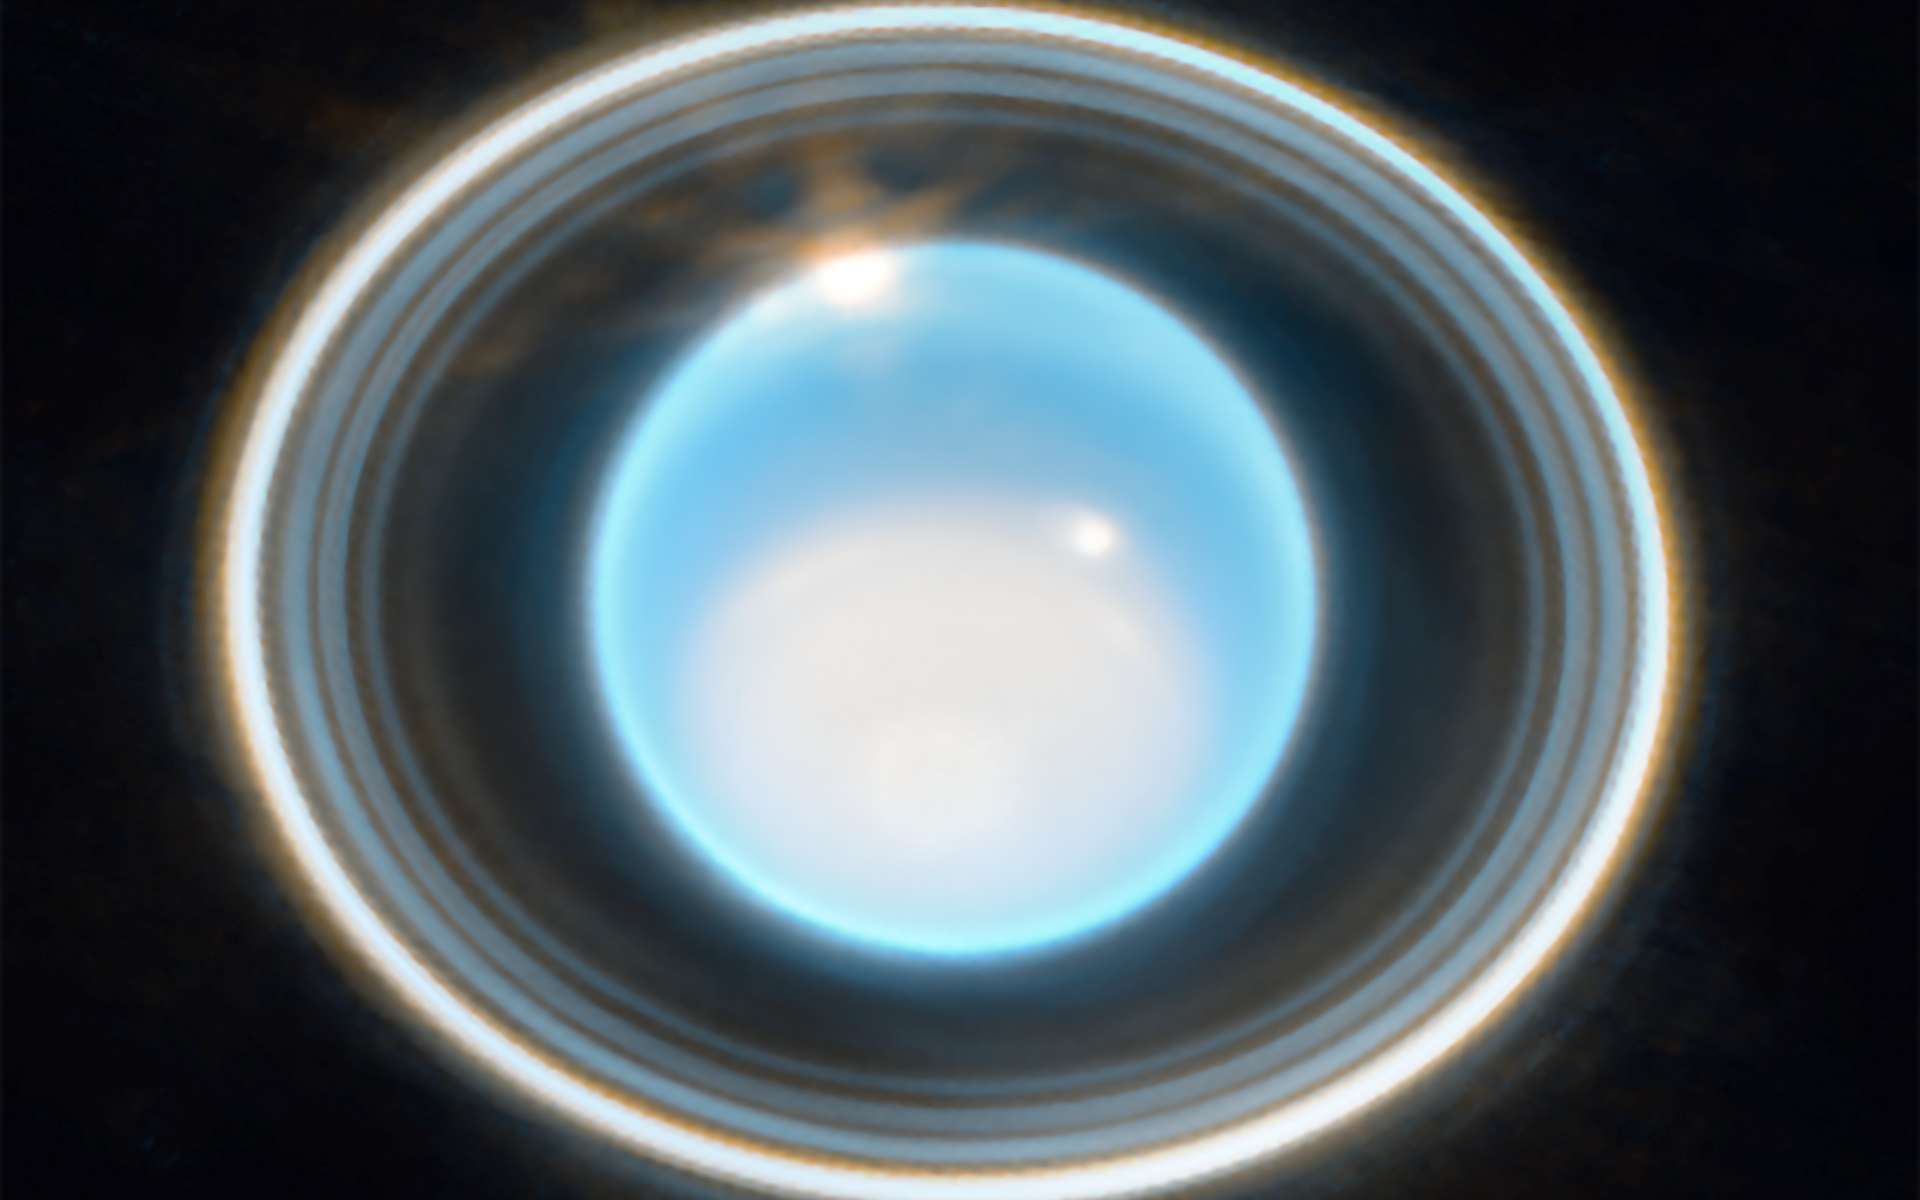 Le télescope James-Webb révèle toute la beauté d'Uranus et de ses anneaux